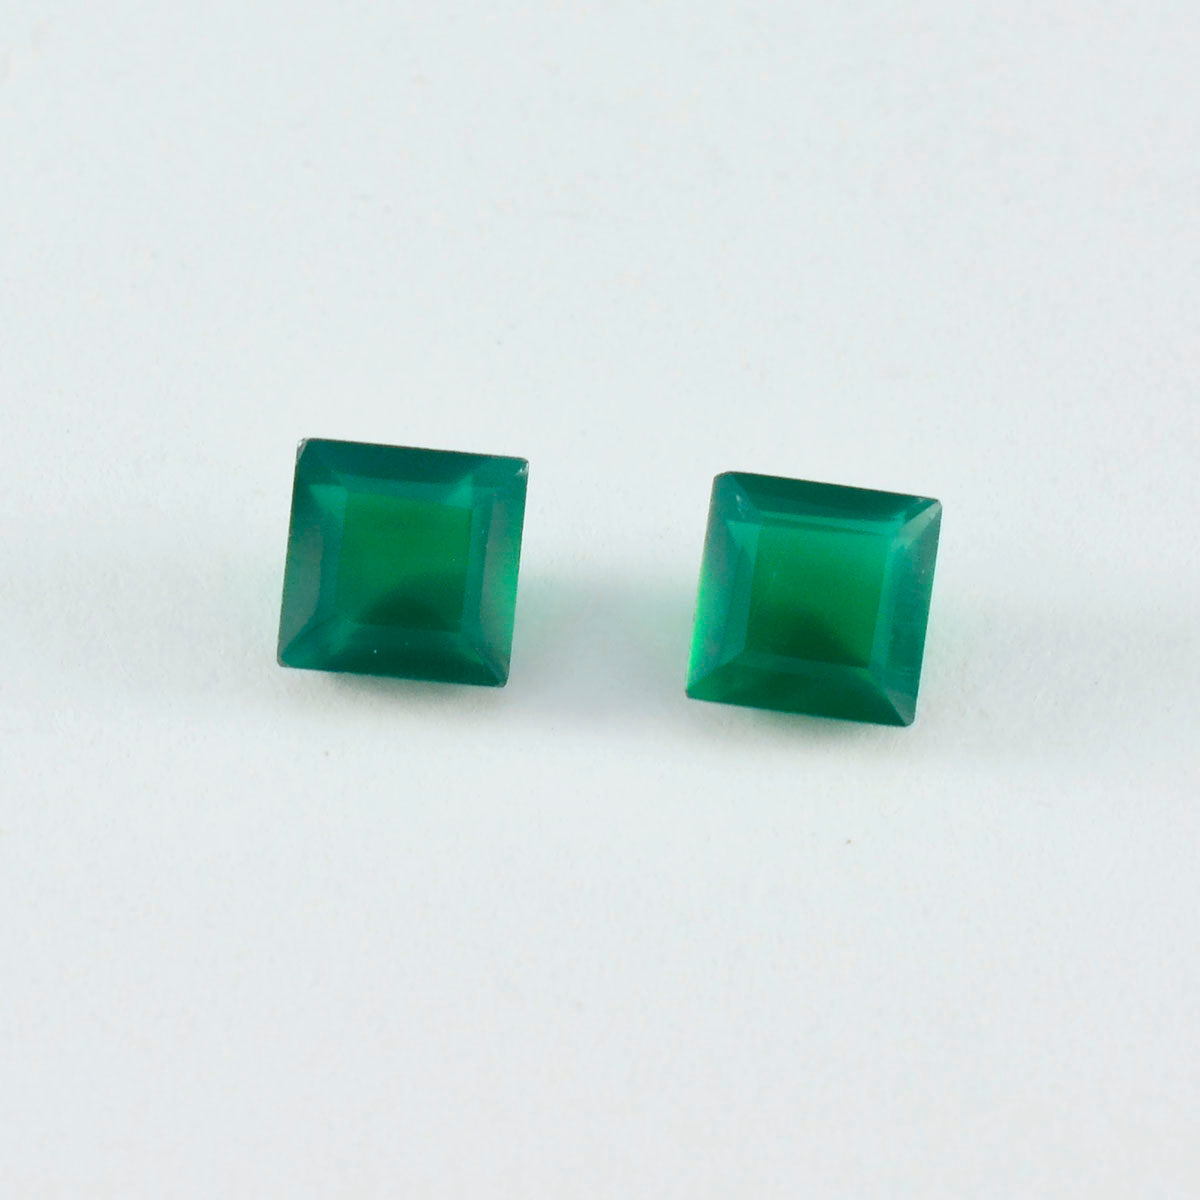 riyogems 1 шт. натуральный зеленый оникс ограненный 9x9 мм квадратной формы драгоценный камень удивительного качества